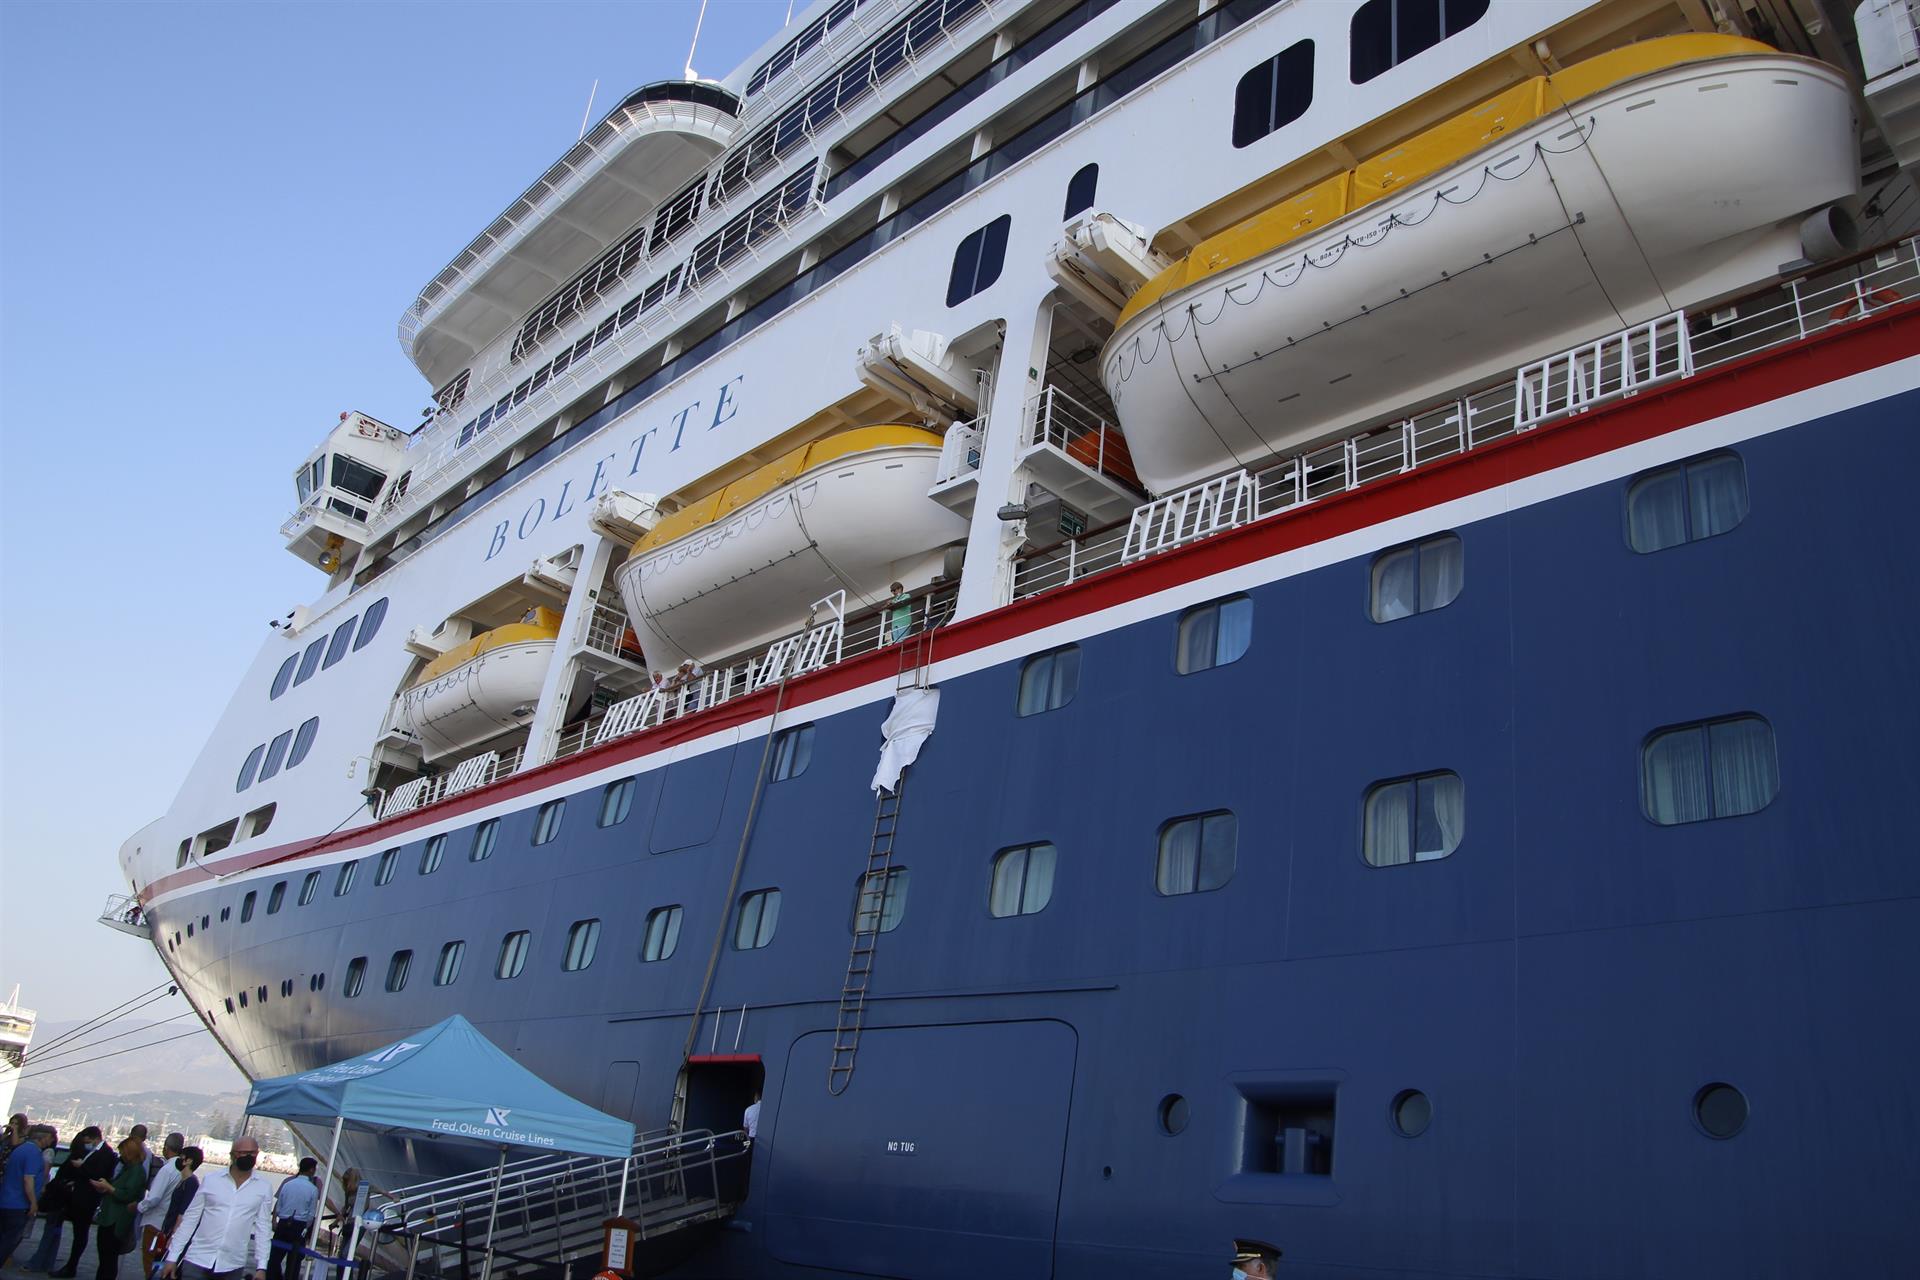 La previsión de cruceros en el Puerto de Motril confirma la recuperación del sector, según la Autoridad Portuaria